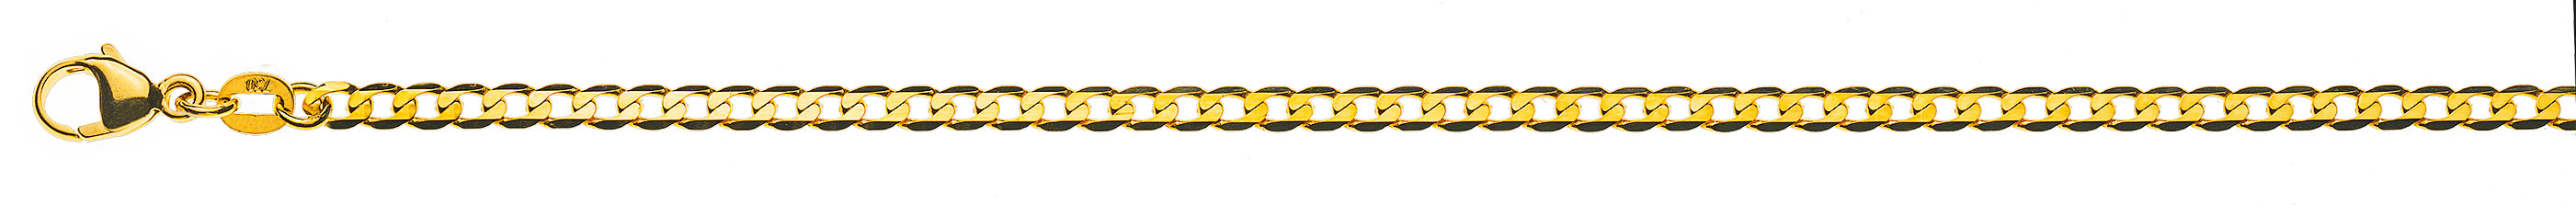 AURONOS Prestige Halskette Gelbgold 18K Panzerkette extraflach diamantiert 50cm 3.1mm